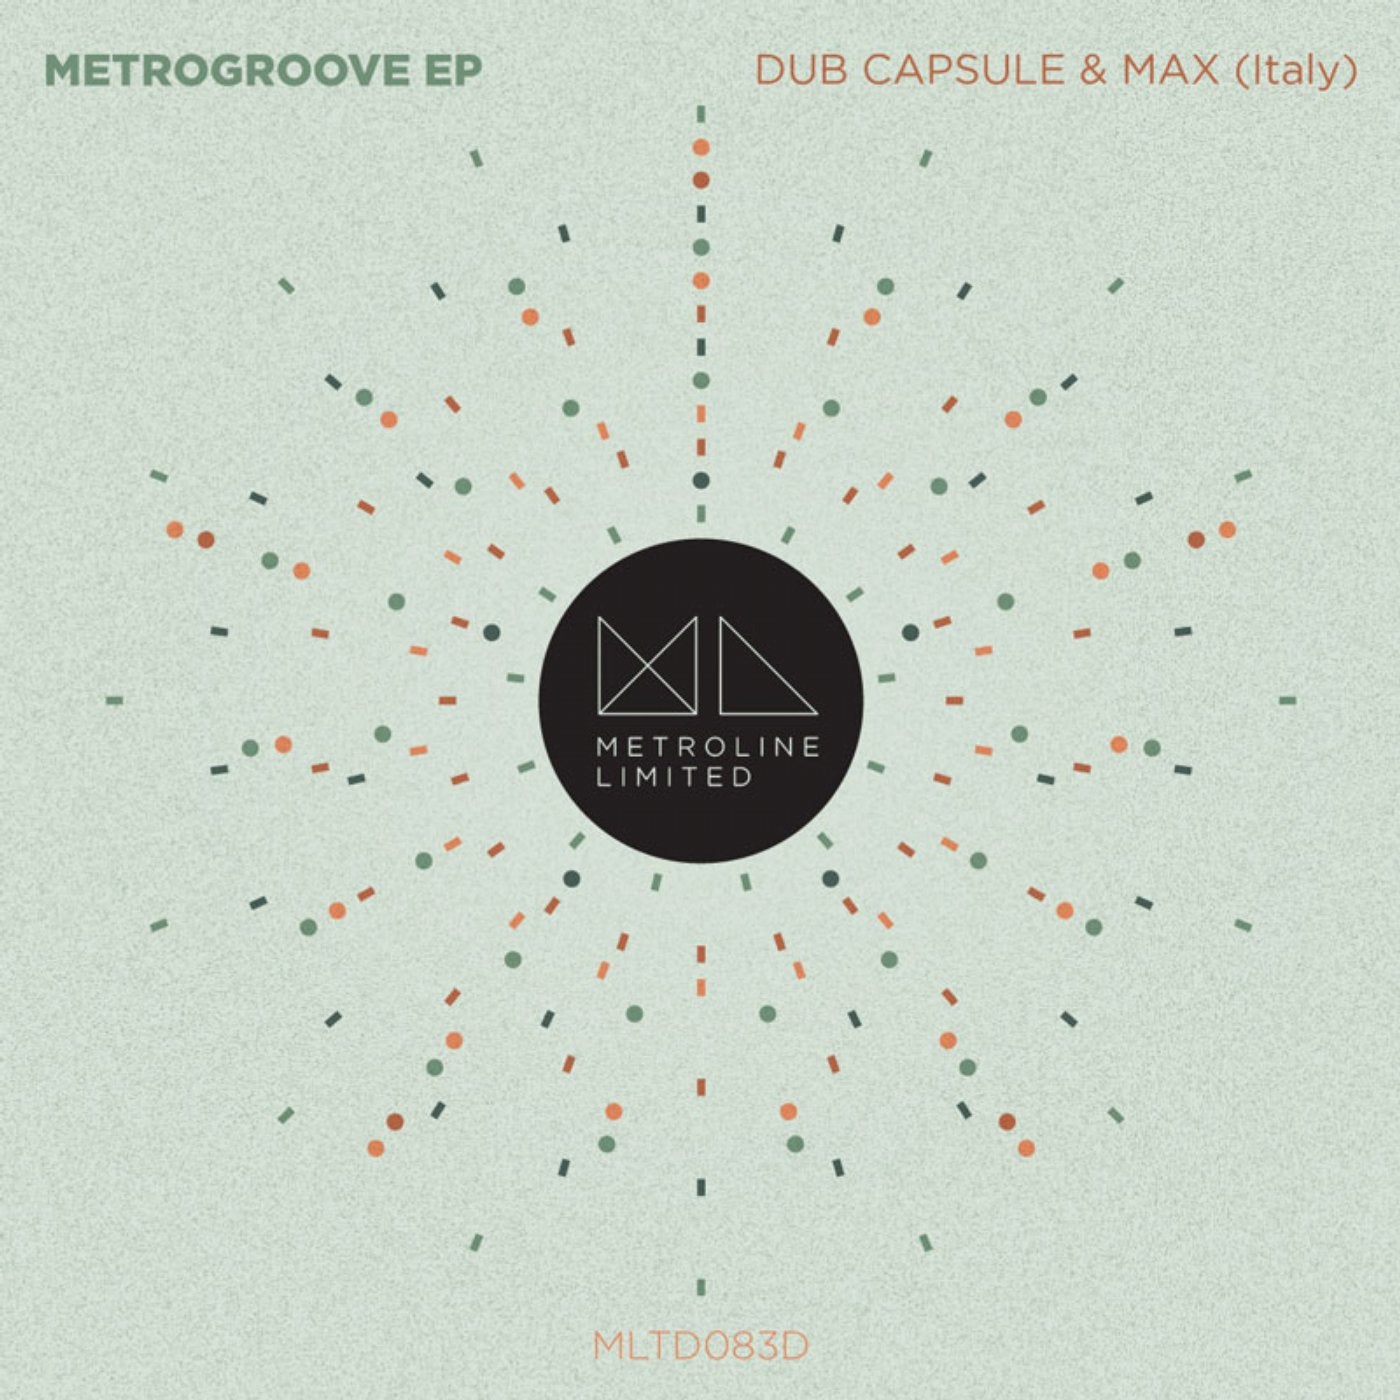 Metrogroove EP